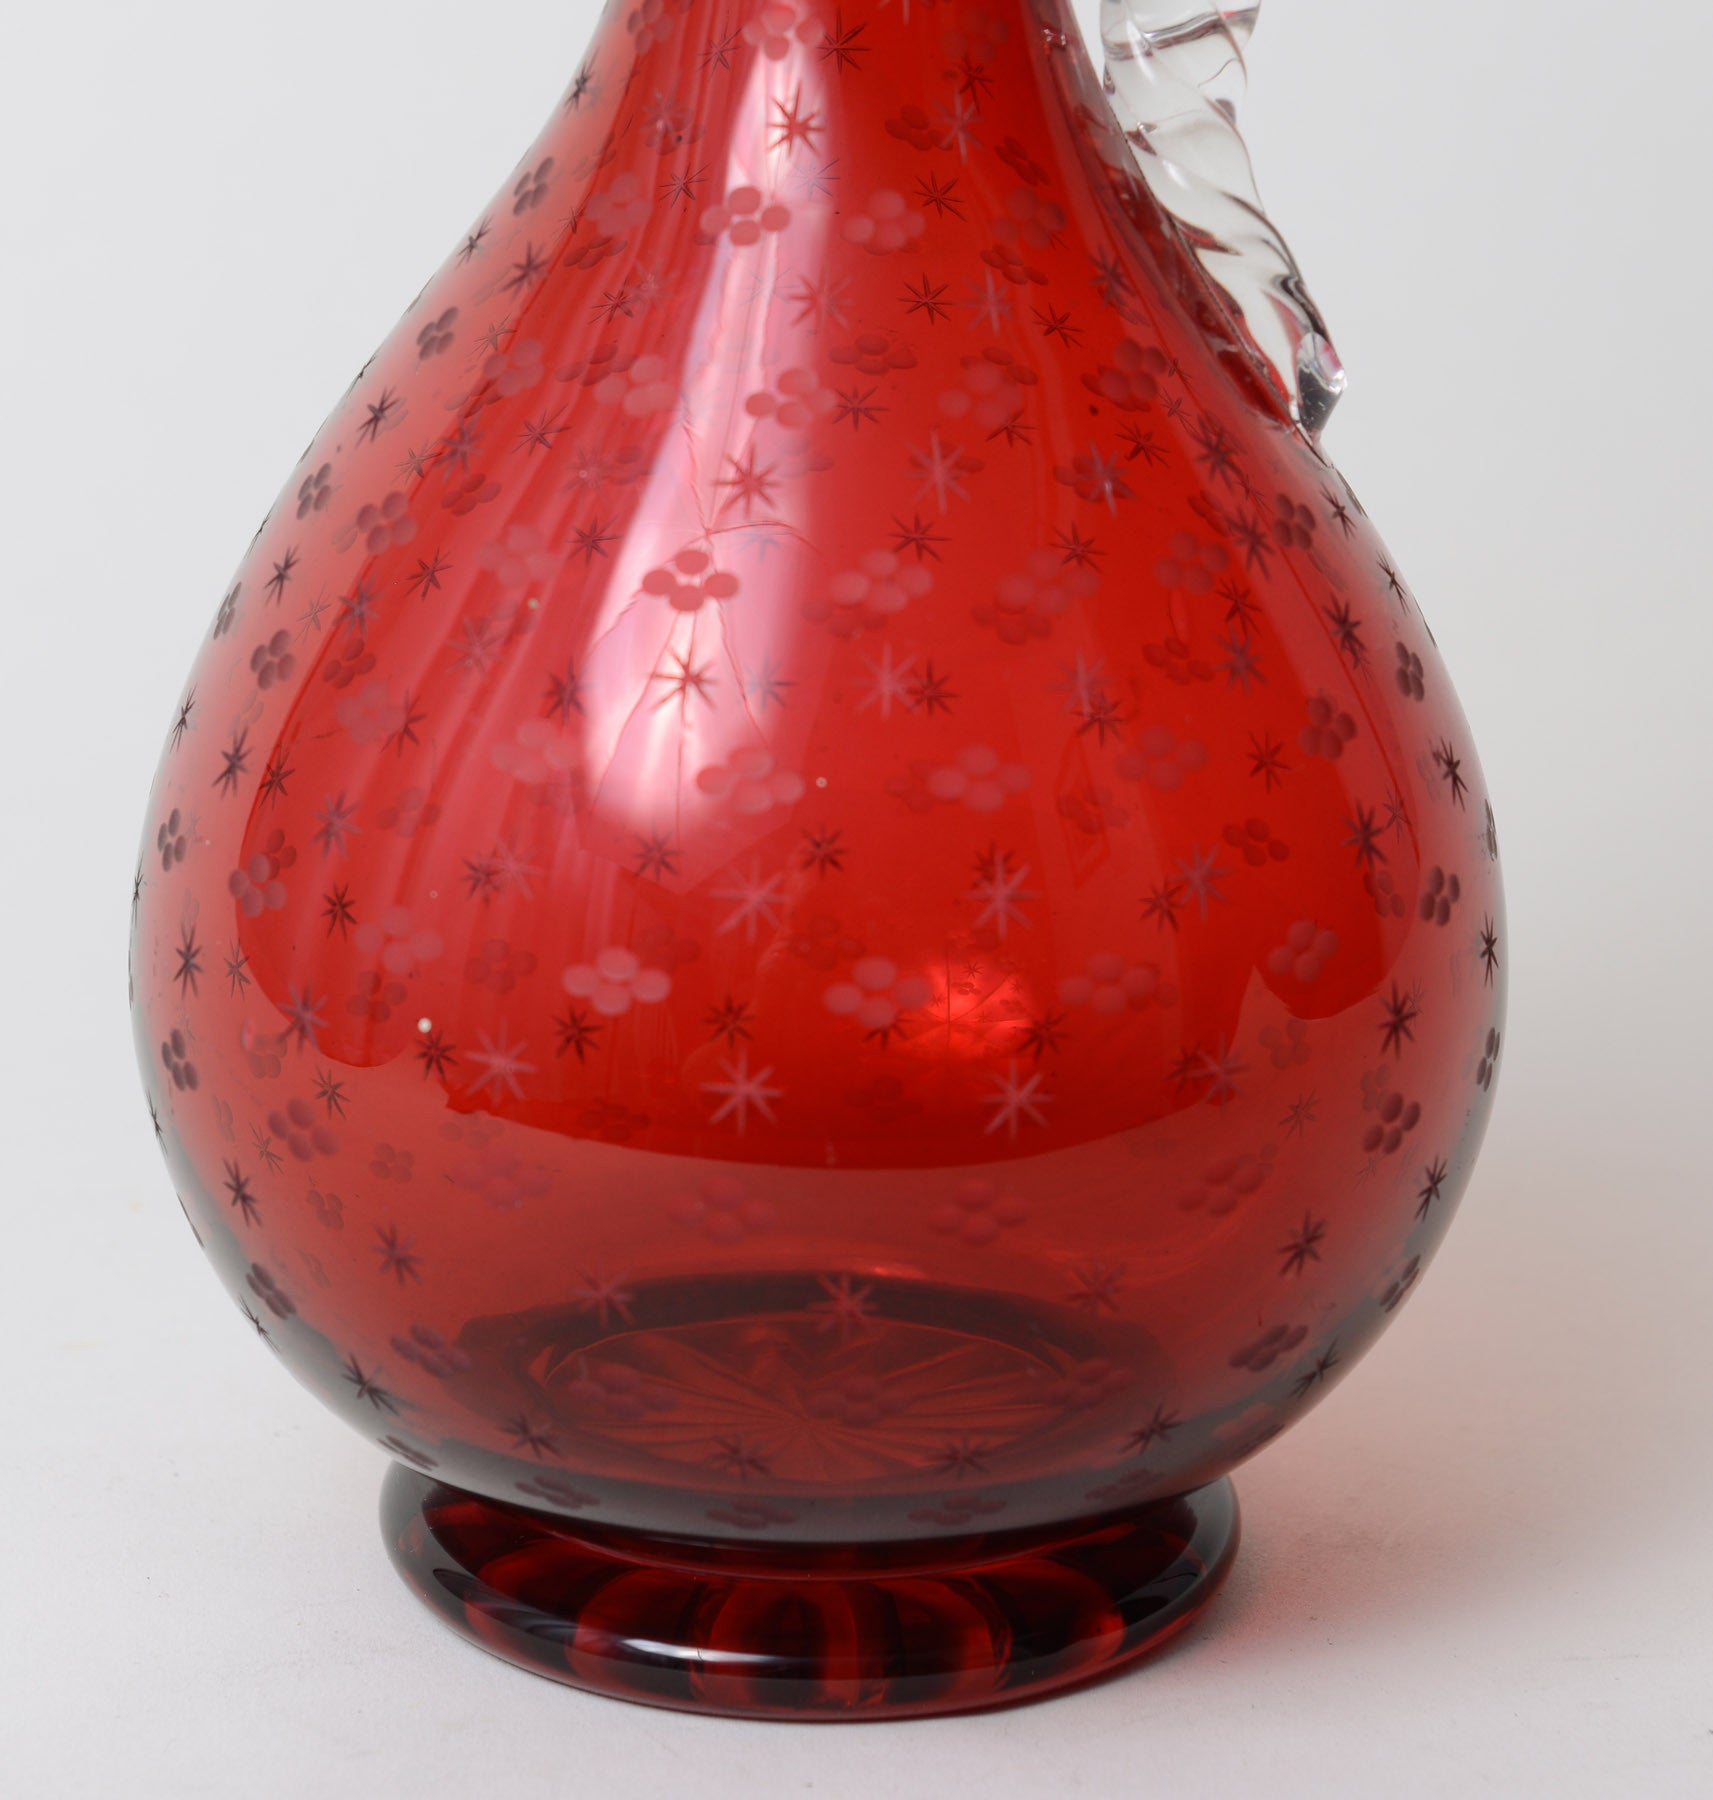 Victorian Antique Etched Cranberry Glass Decanter / Claret Jug c1860 (Code 0238) - Blue Cherry Antiques - 2